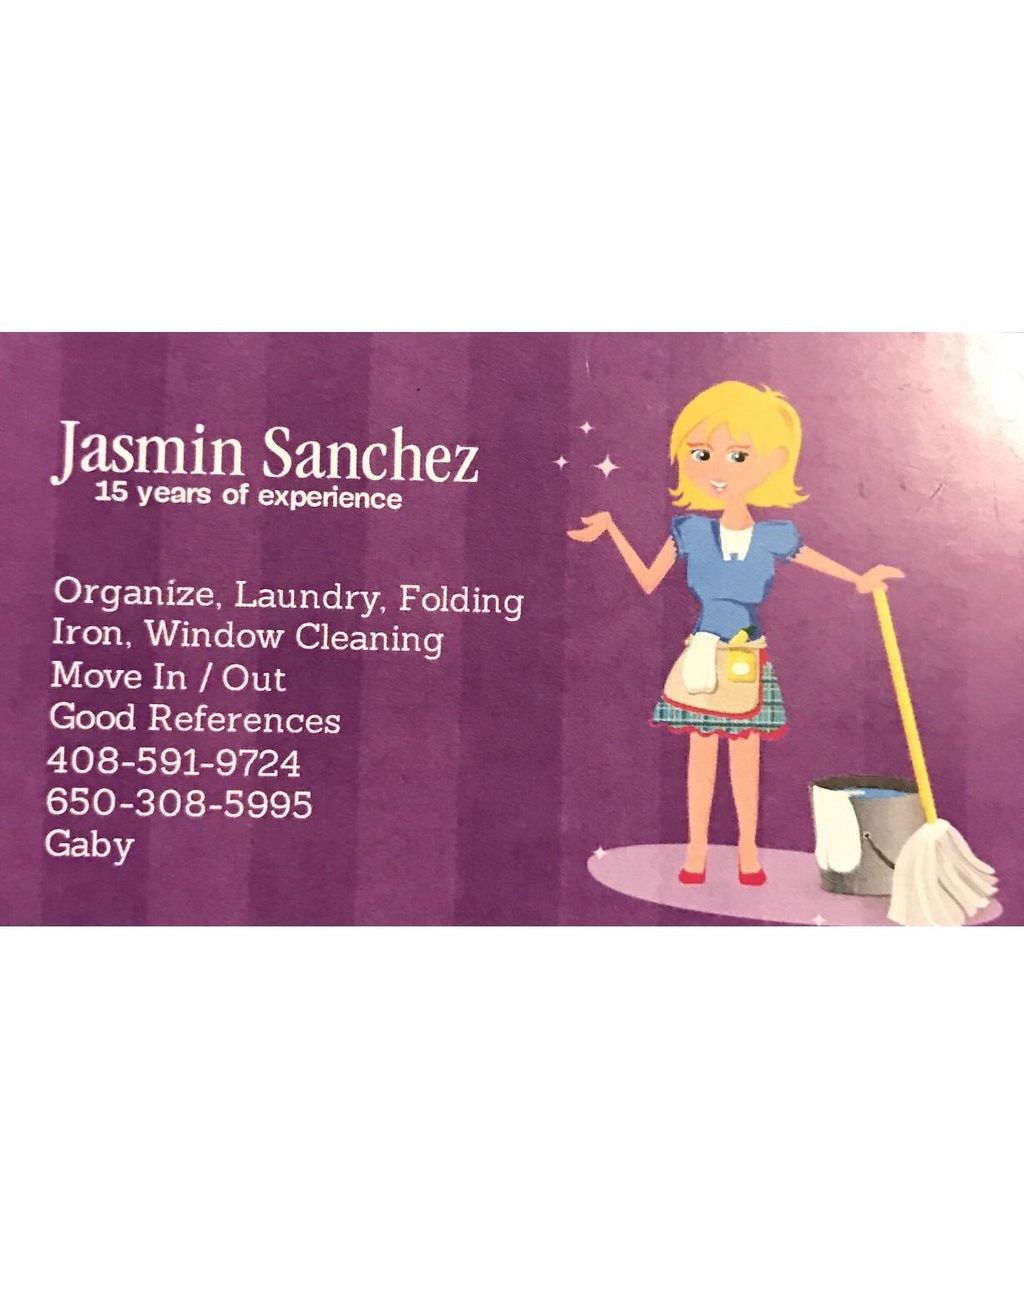 Jasmin Sanchez House Cleaning